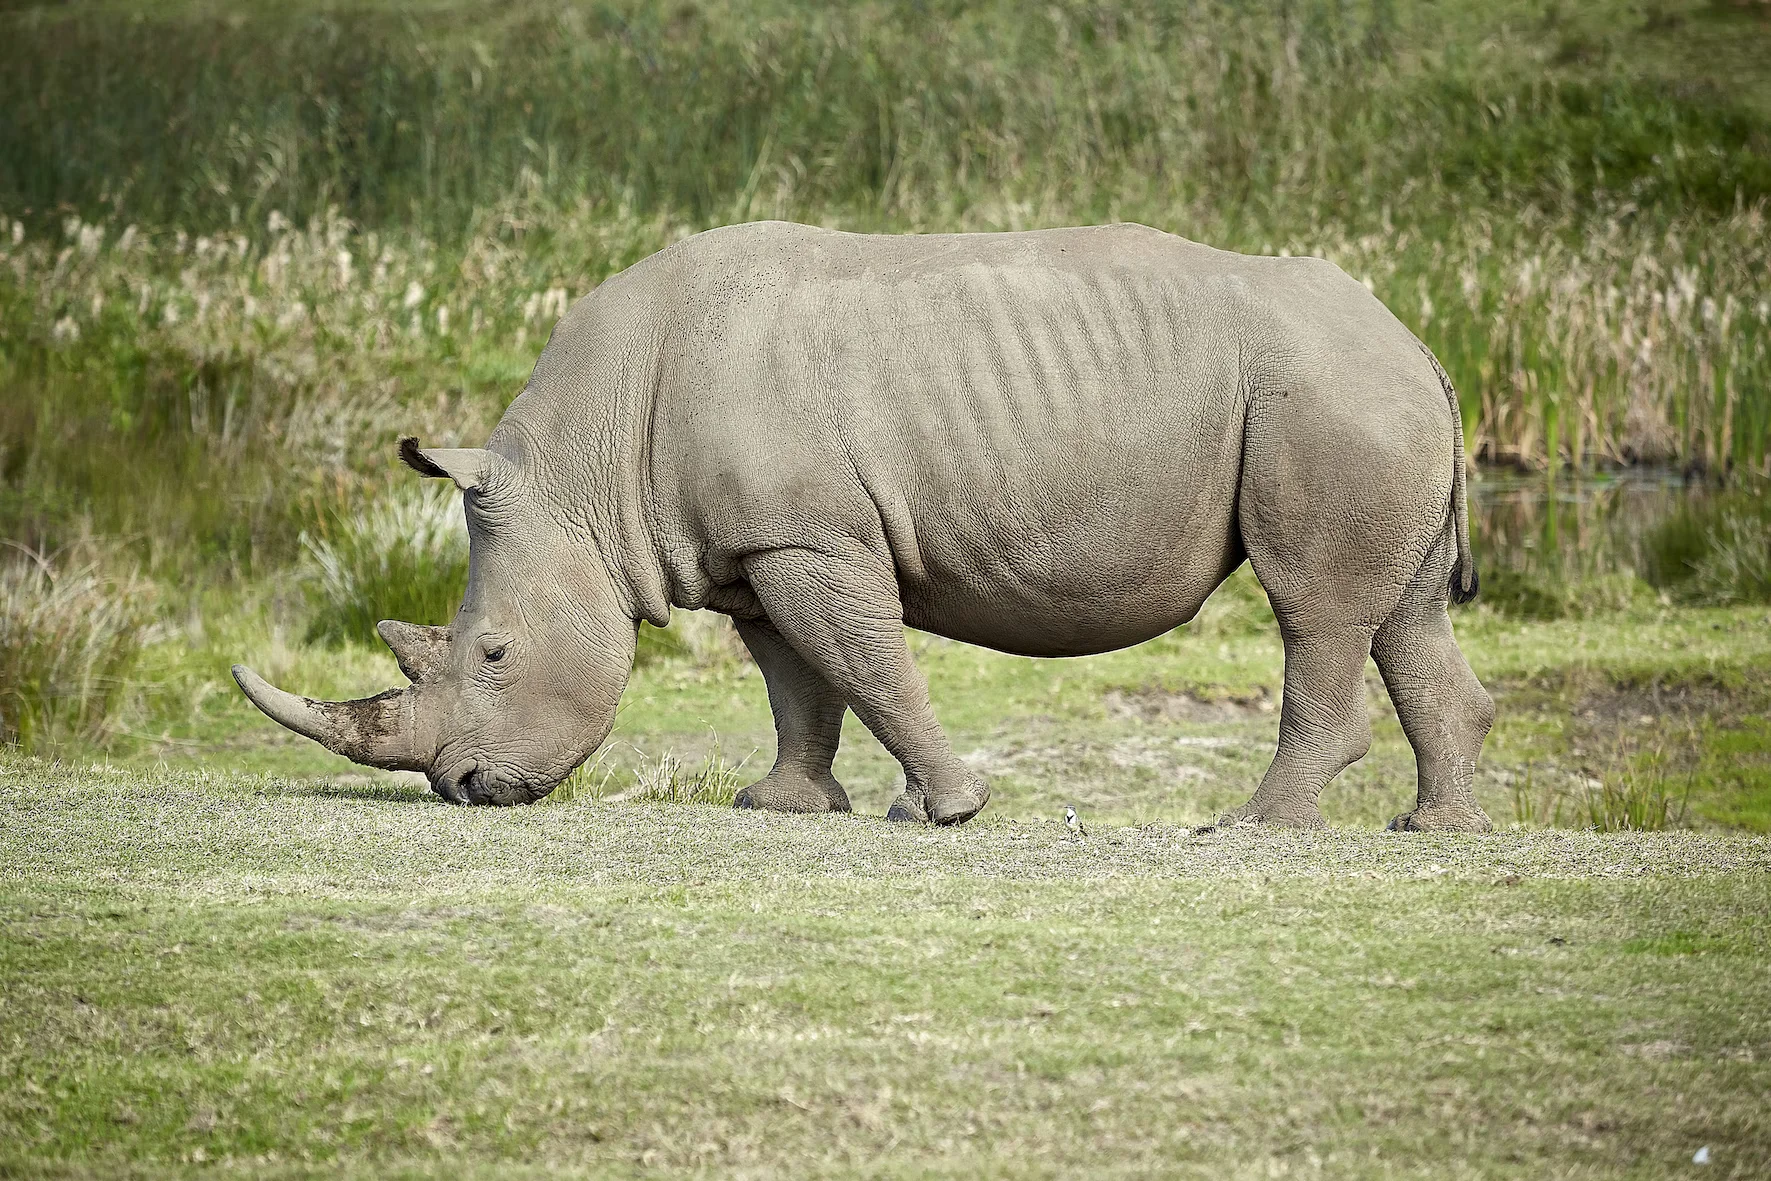 A rhinoceros.